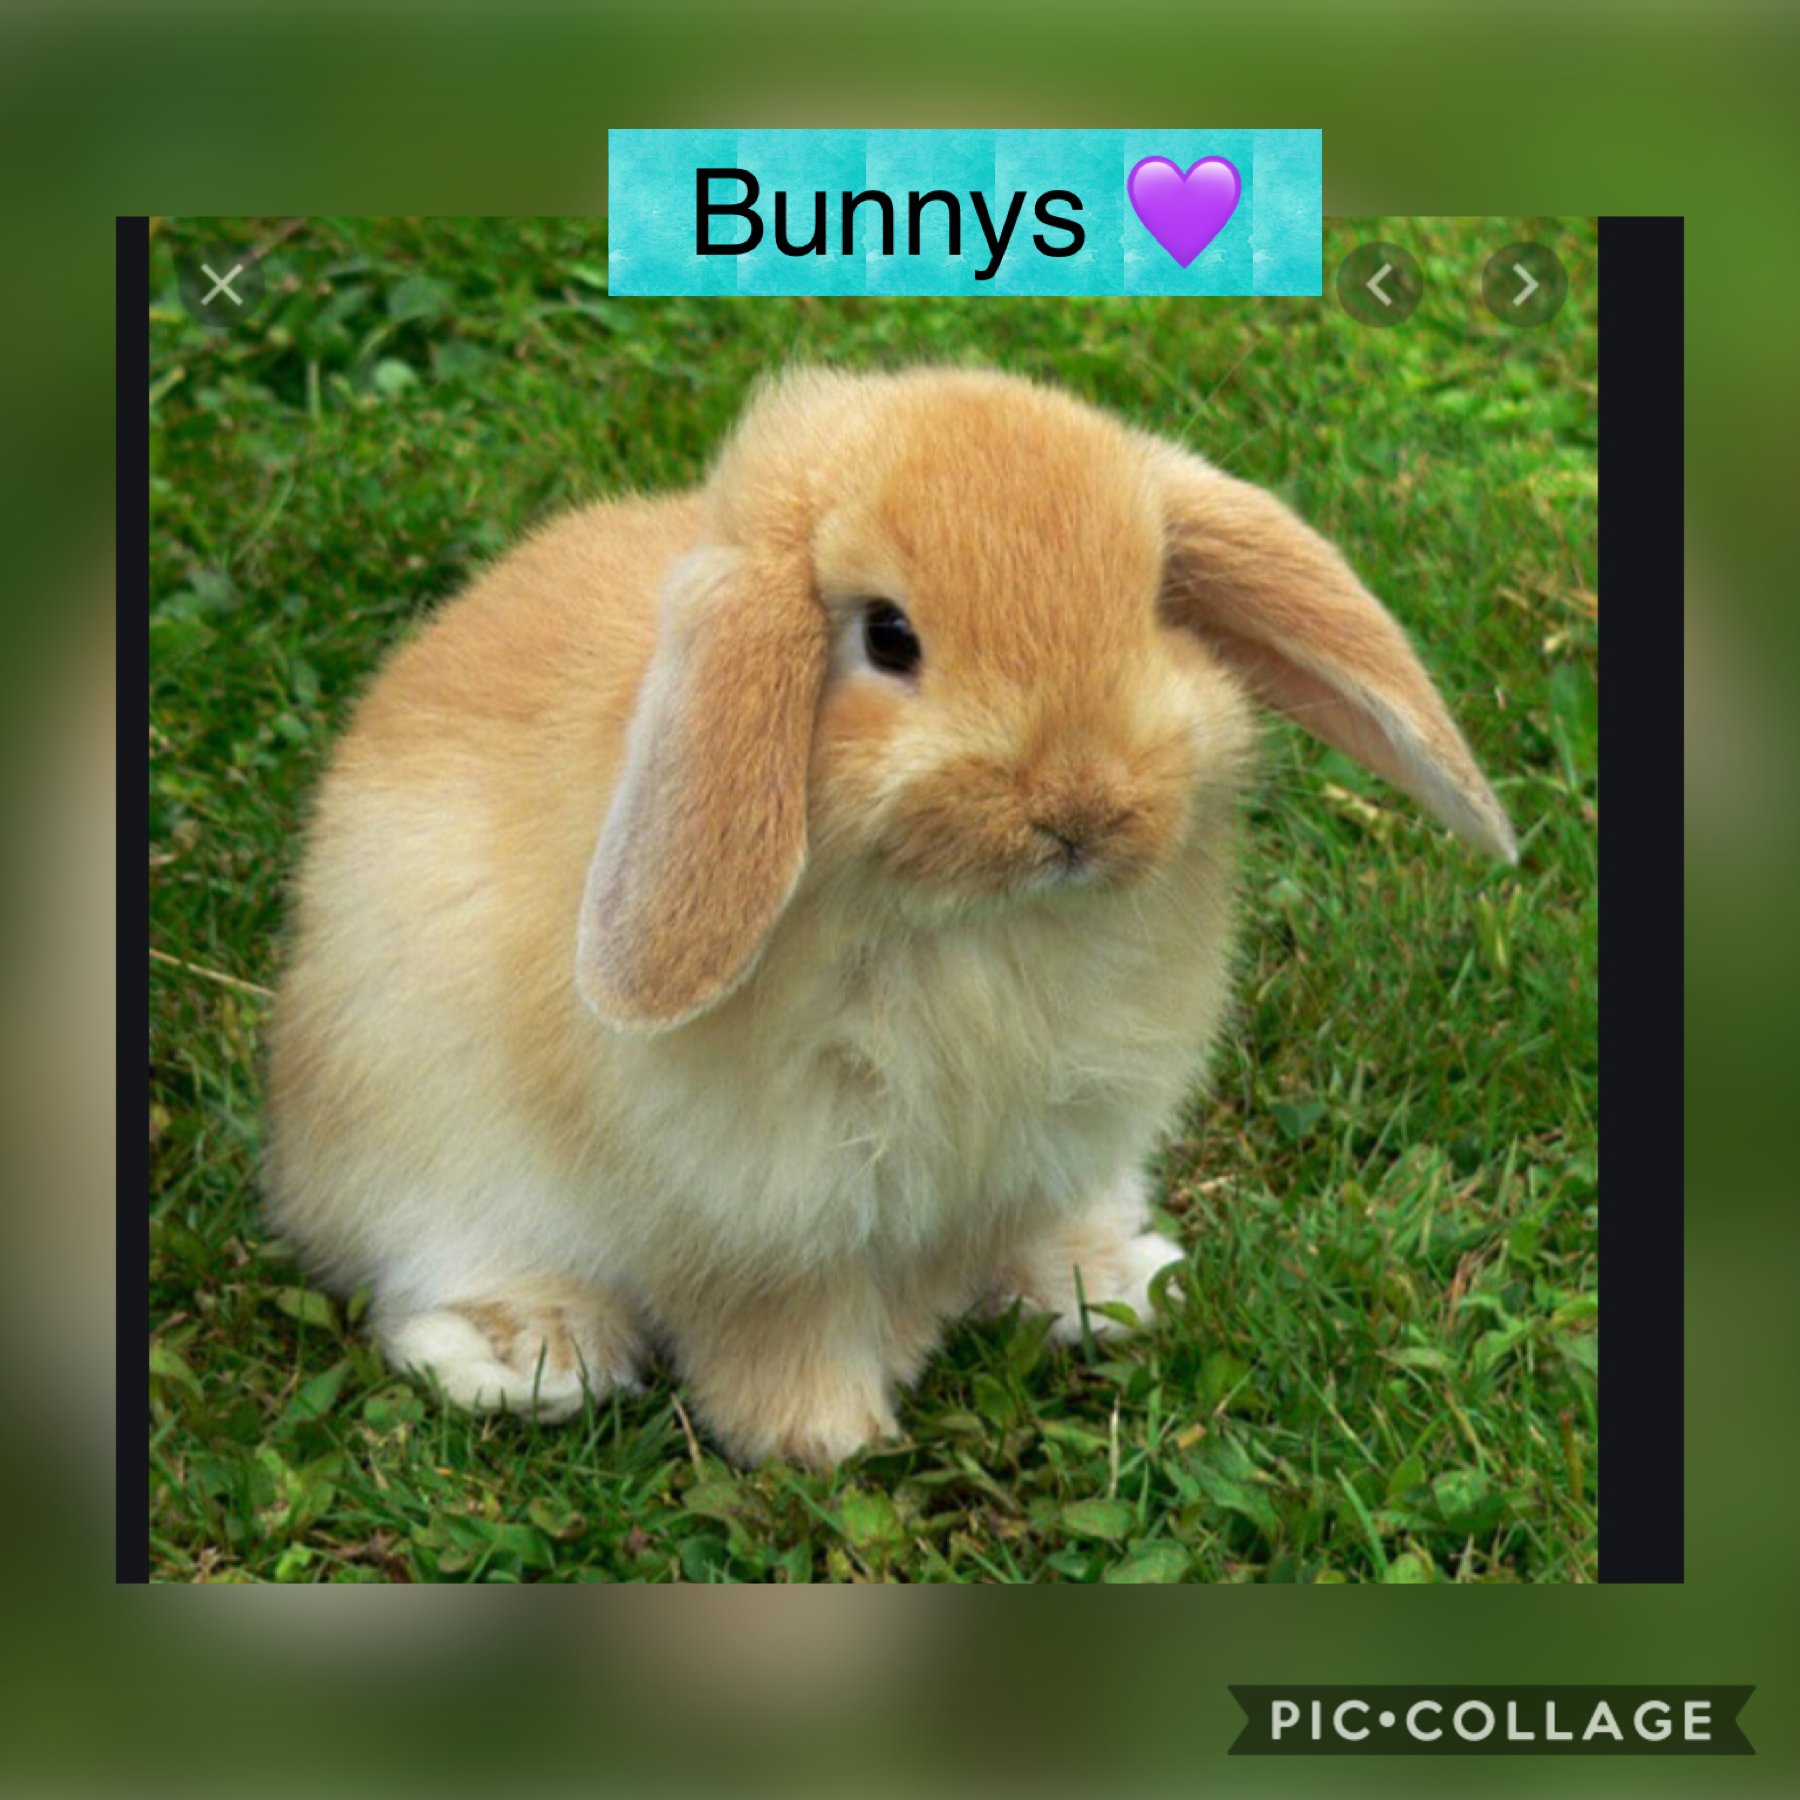 Super cute bunny!